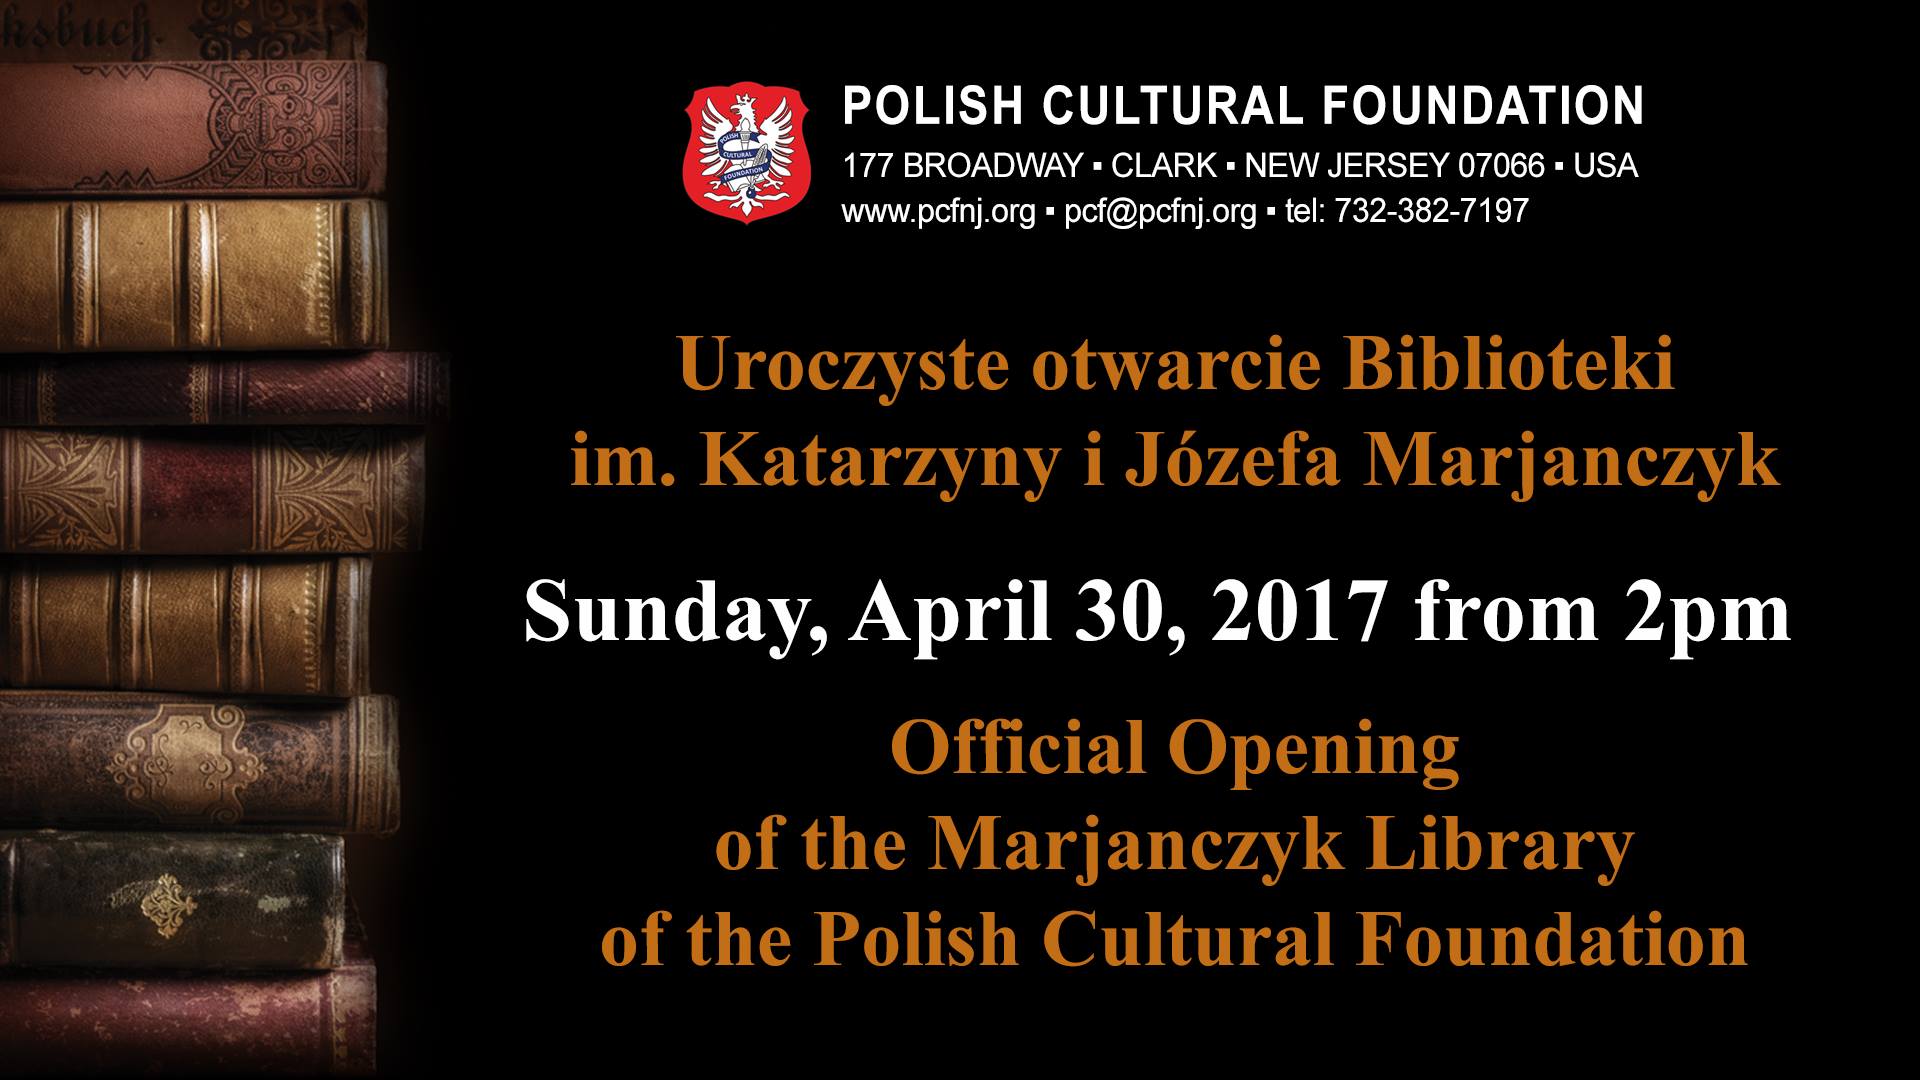 Uroczyste otwarcie biblioteki im. Katarzyny i Józefa Marjanczyk w Polskiej Fundacji Kulturalnej